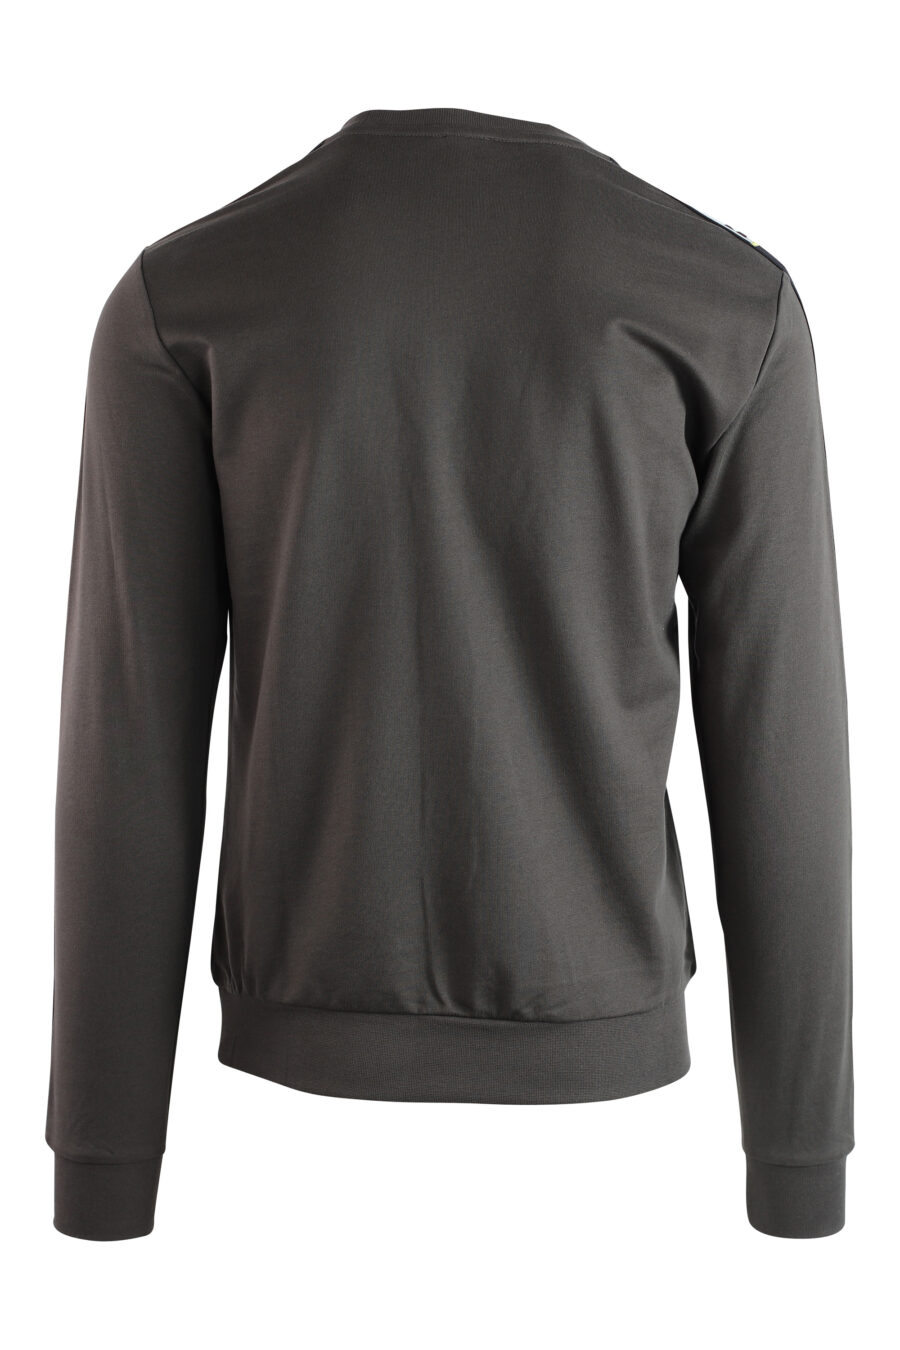 Graues Sweatshirt mit Schleifenlogo an den Ärmeln und schwarzem Mini-Logo - IMG 3748